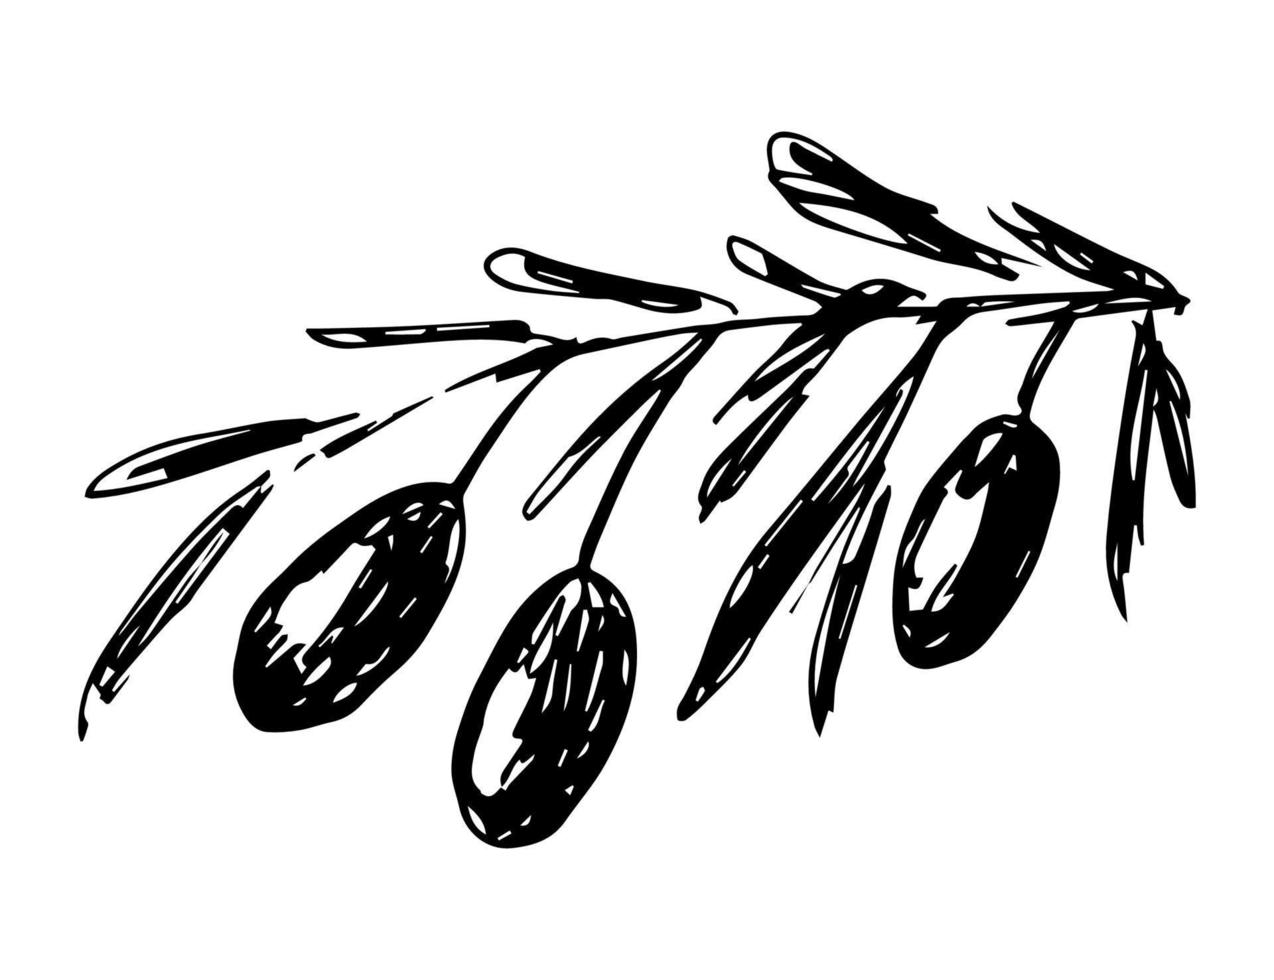 handgetekende vector zwarte en witte inkt tekenen. tak met olijven, bladeren geïsoleerd op een witte achtergrond. planten, gezonde voeding. voor prints, etiketten, verpakkingen.